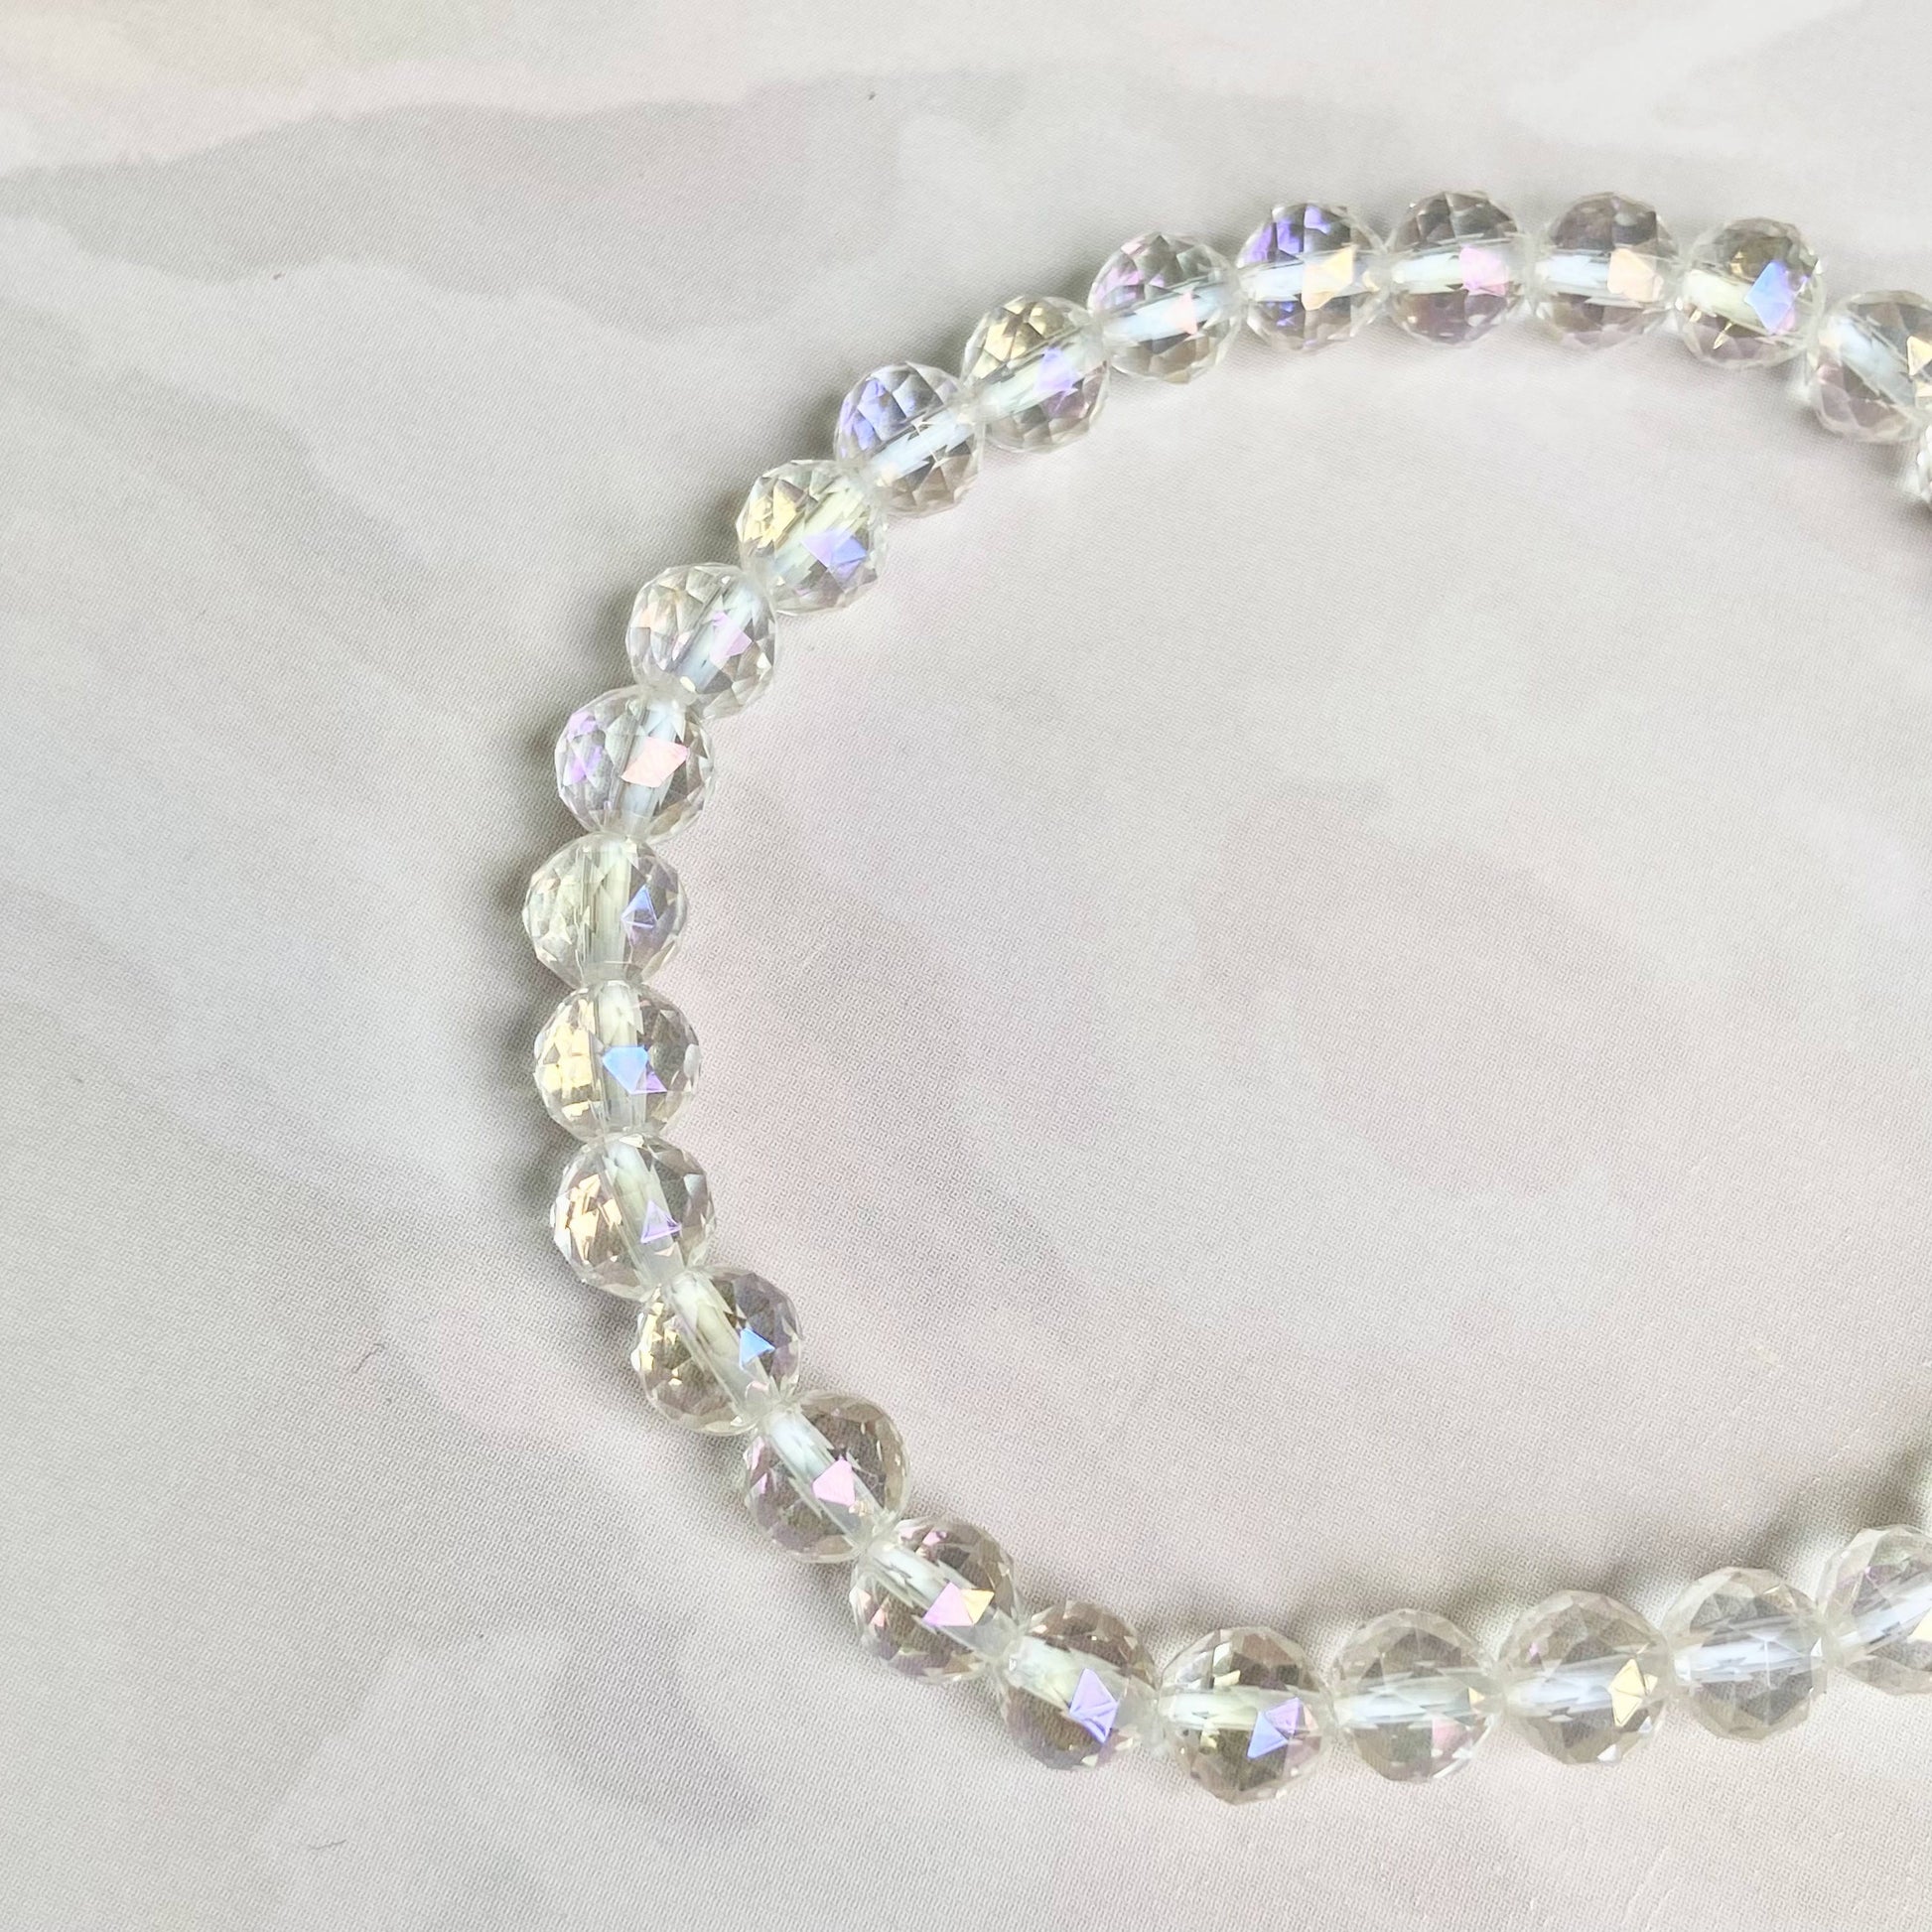 Angel Aura Quartz Multi Facet Bead Bracelet - 6Mm | Peace & Purification Crystal Stones